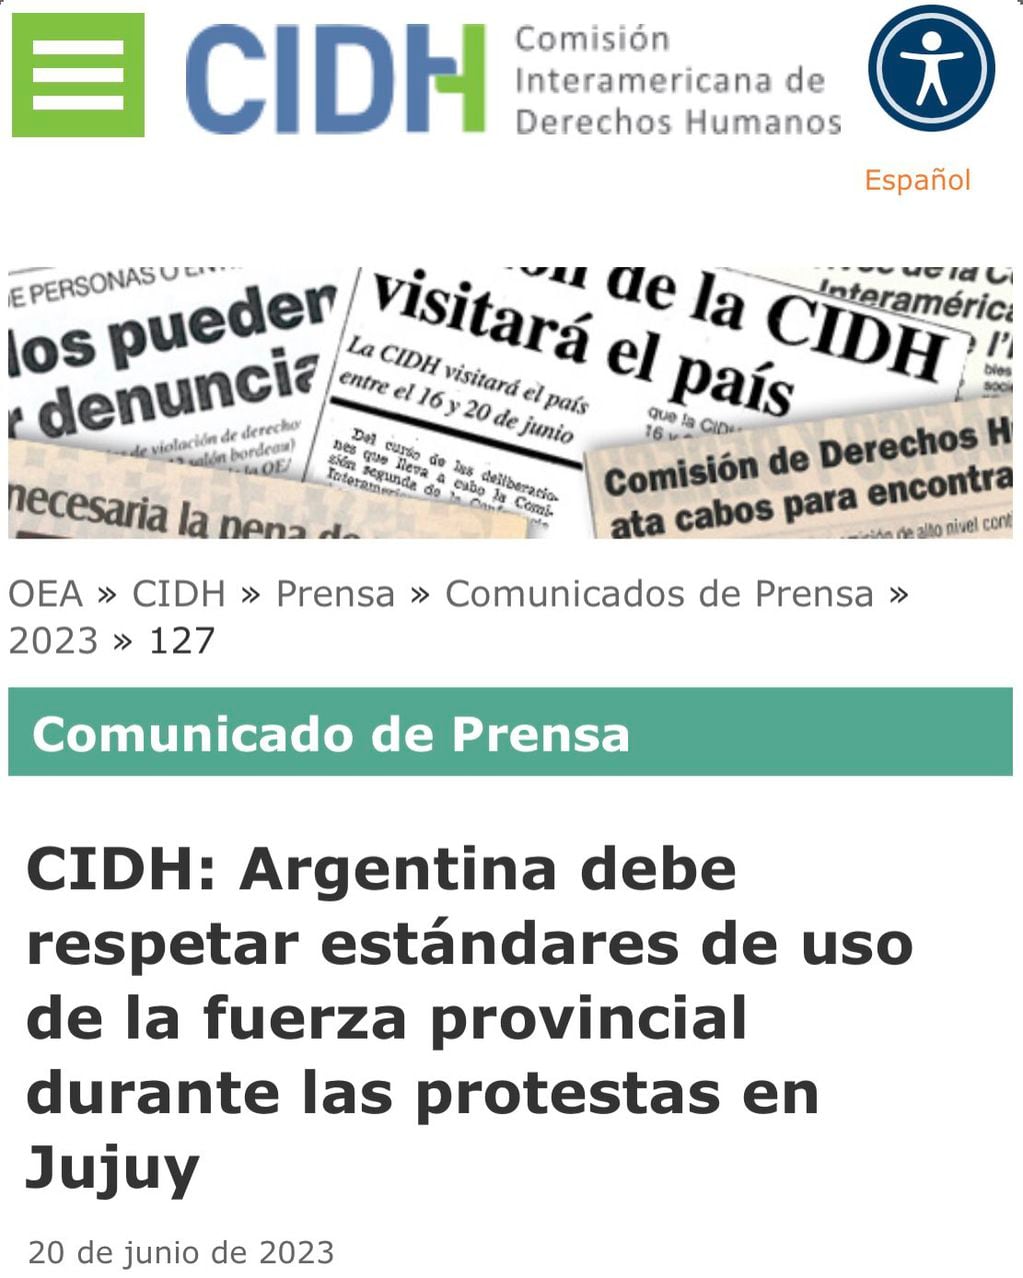 La Comisión Interamericana de Derechos Humanos se pronunció tras los incidentes en Jujuy